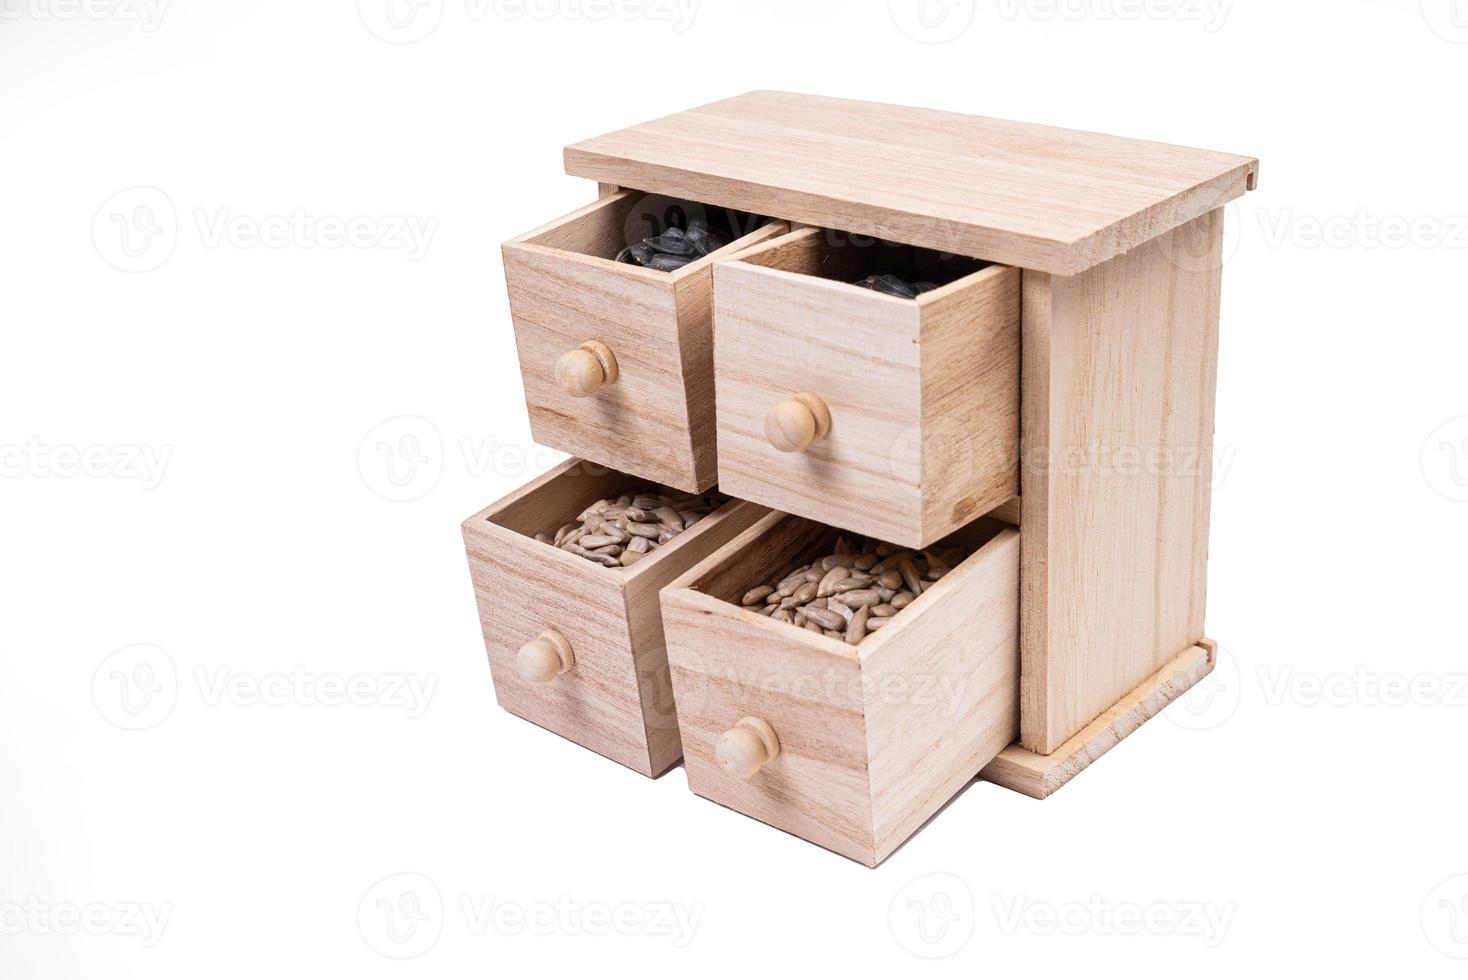 celdas de caja de madera llenas de varias especias. caja de madera con semillas de girasol, peladas y crudas foto